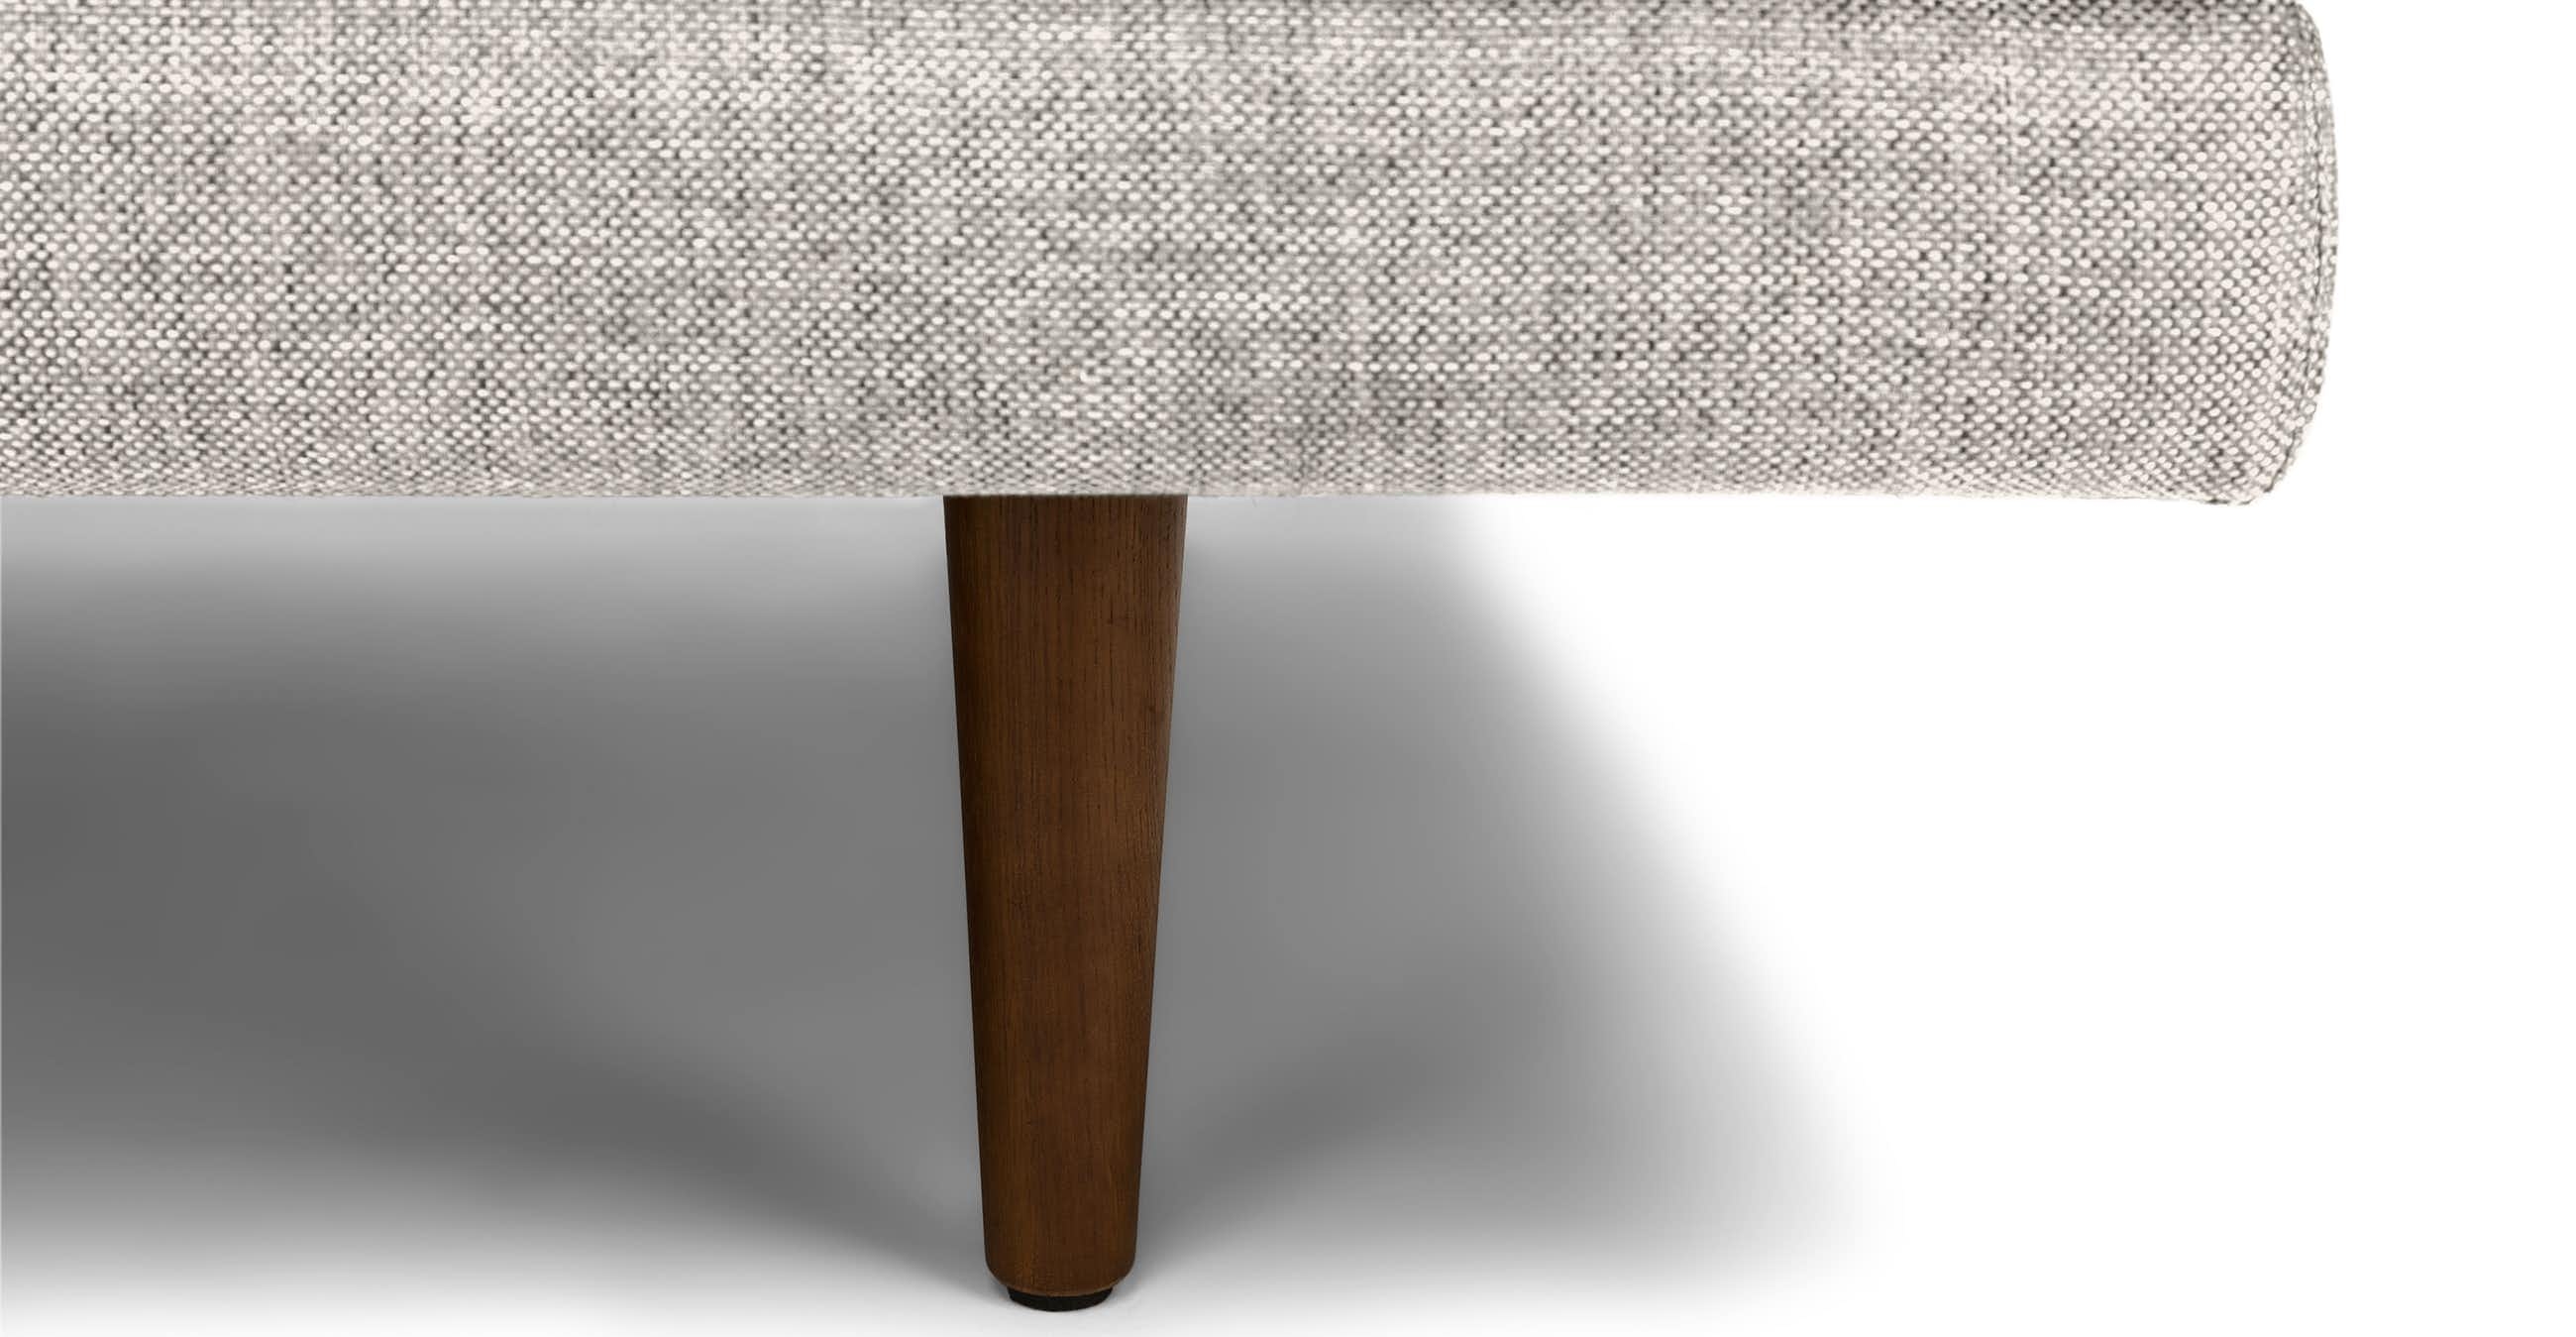 Burrard Seasalt Gray Sofa - Image 5